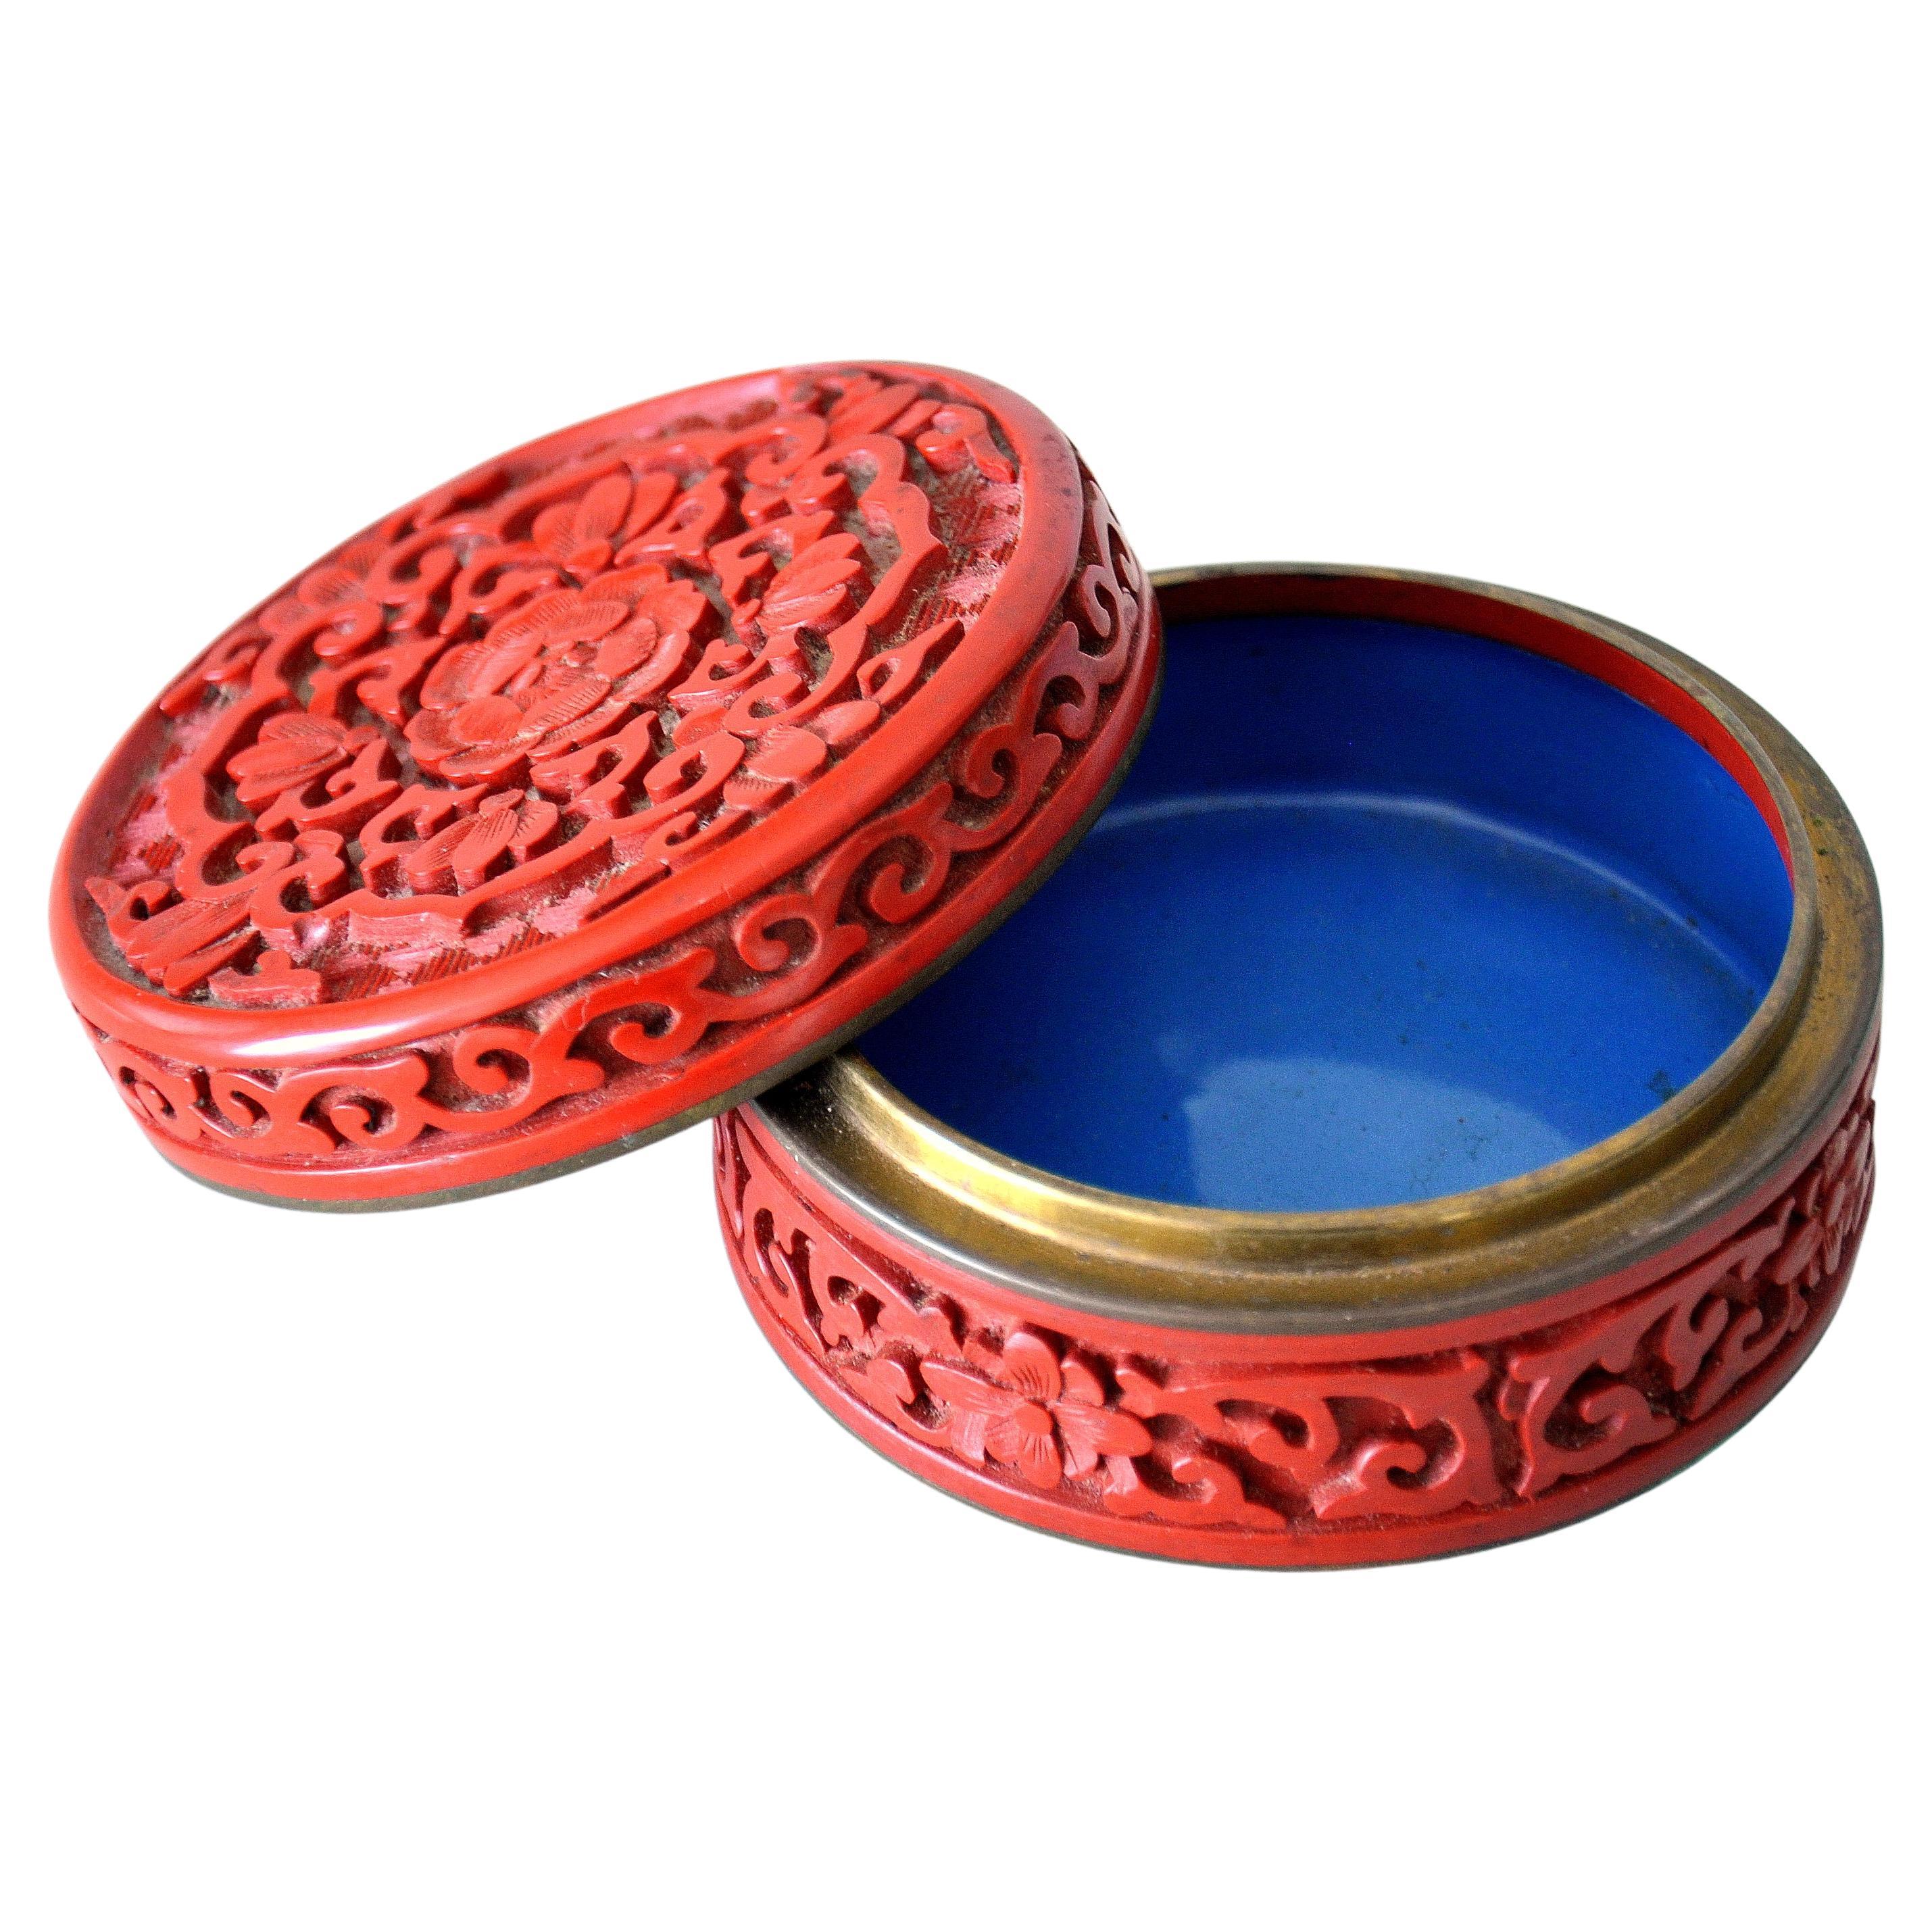 Une boîte ronde à couvercle en laque rouge cinabre, sculptée avec soin, avec intérieur en émail bleu et accessoires en laiton. La boîte à bijoux 